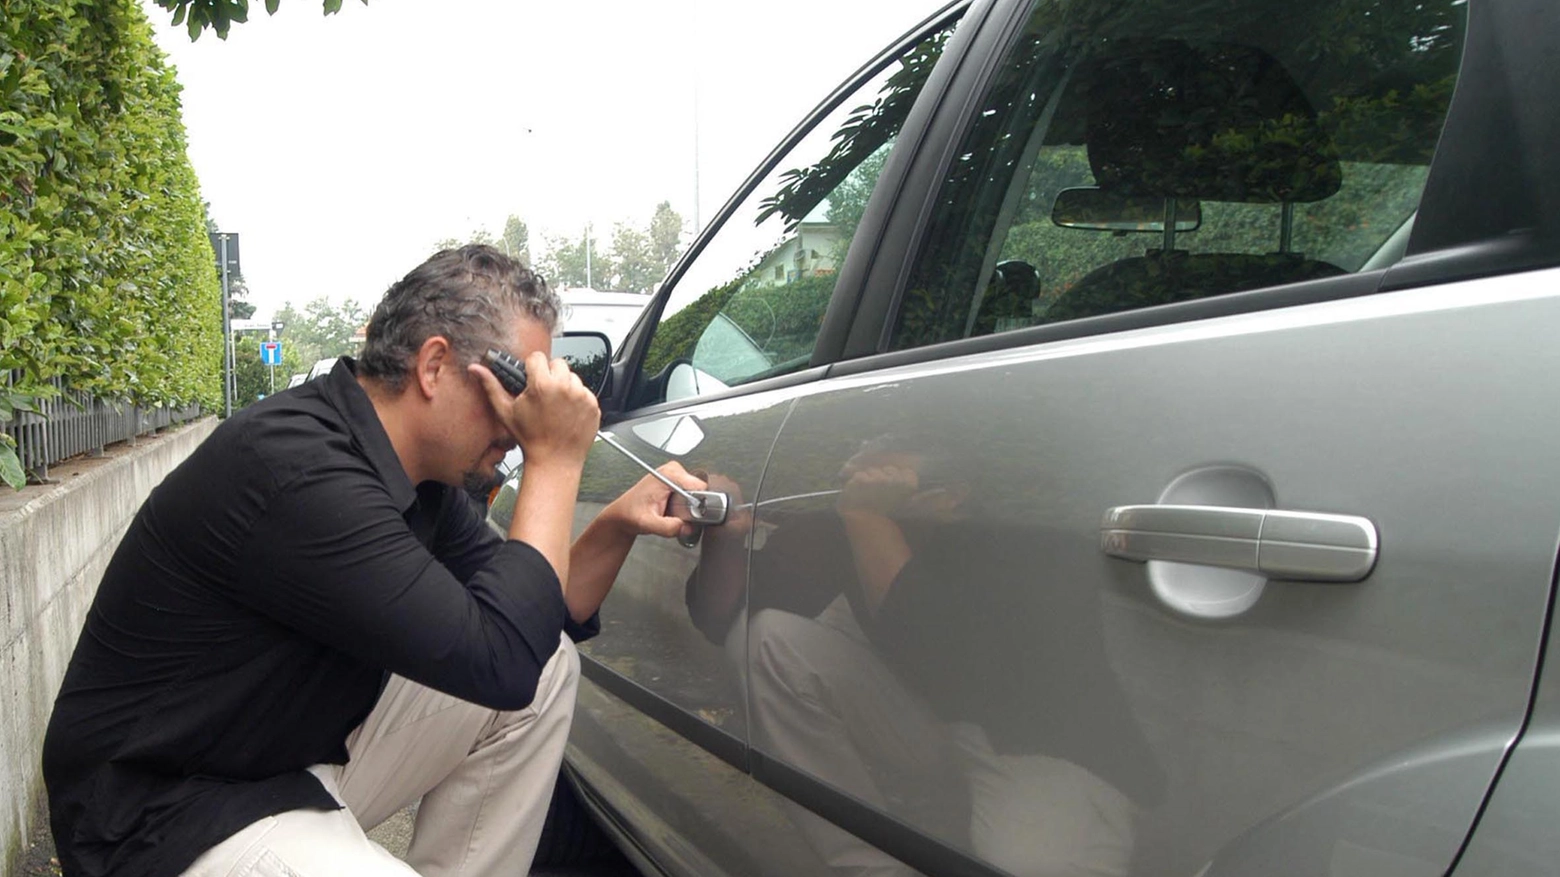 Furti sulle auto: un ladro scassina la serratura di una macchina, foto geenerica